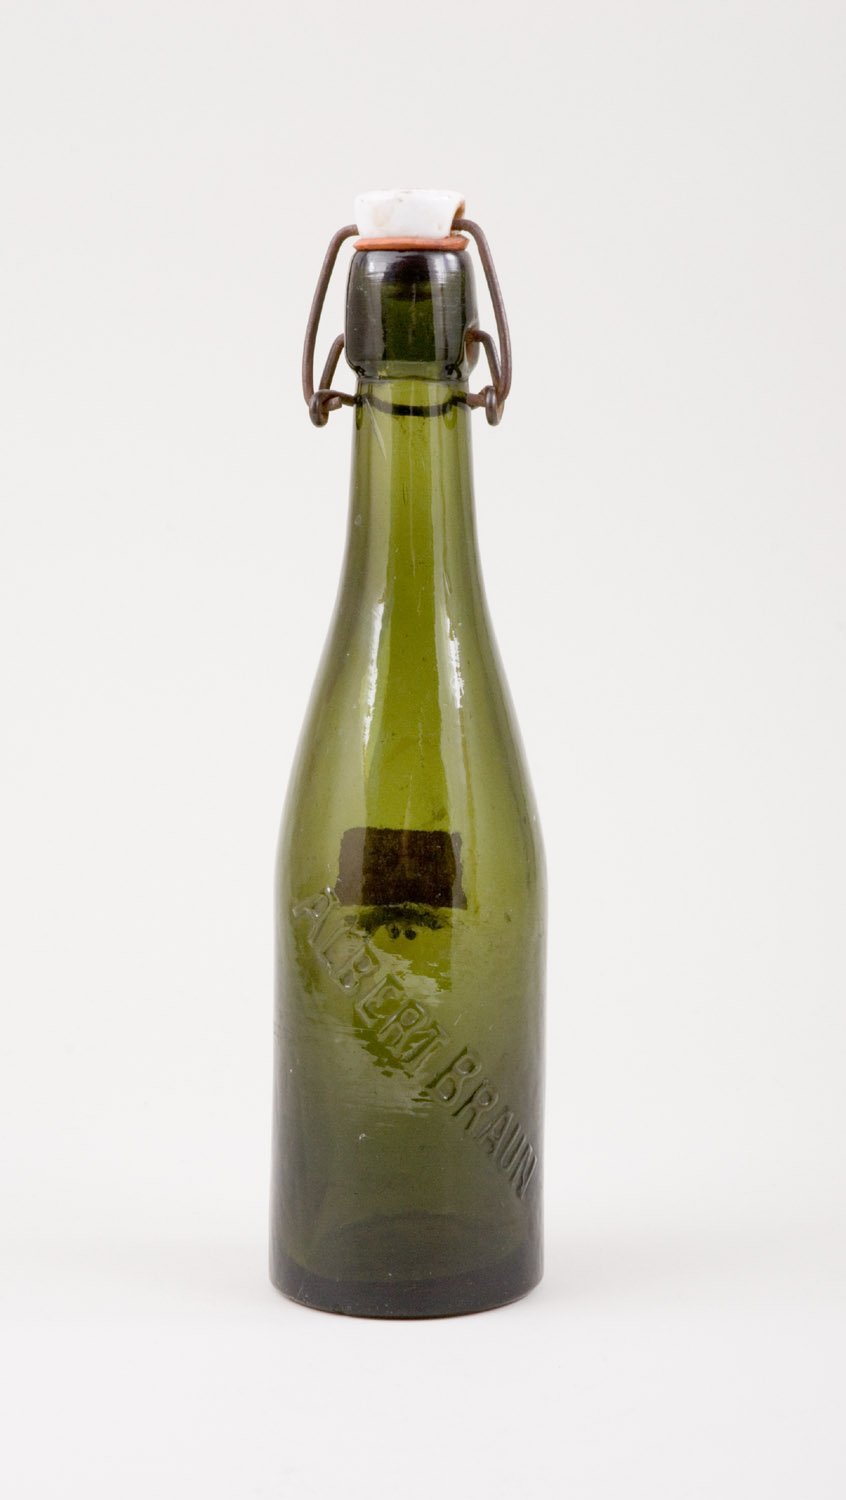 Bierflasche "Albert Braun", mit Bügelverschluss (Stiftung Domäne Dahlem - Landgut und Museum, Weiternutzung nur mit Genehmigung des Museums CC BY-NC-SA)